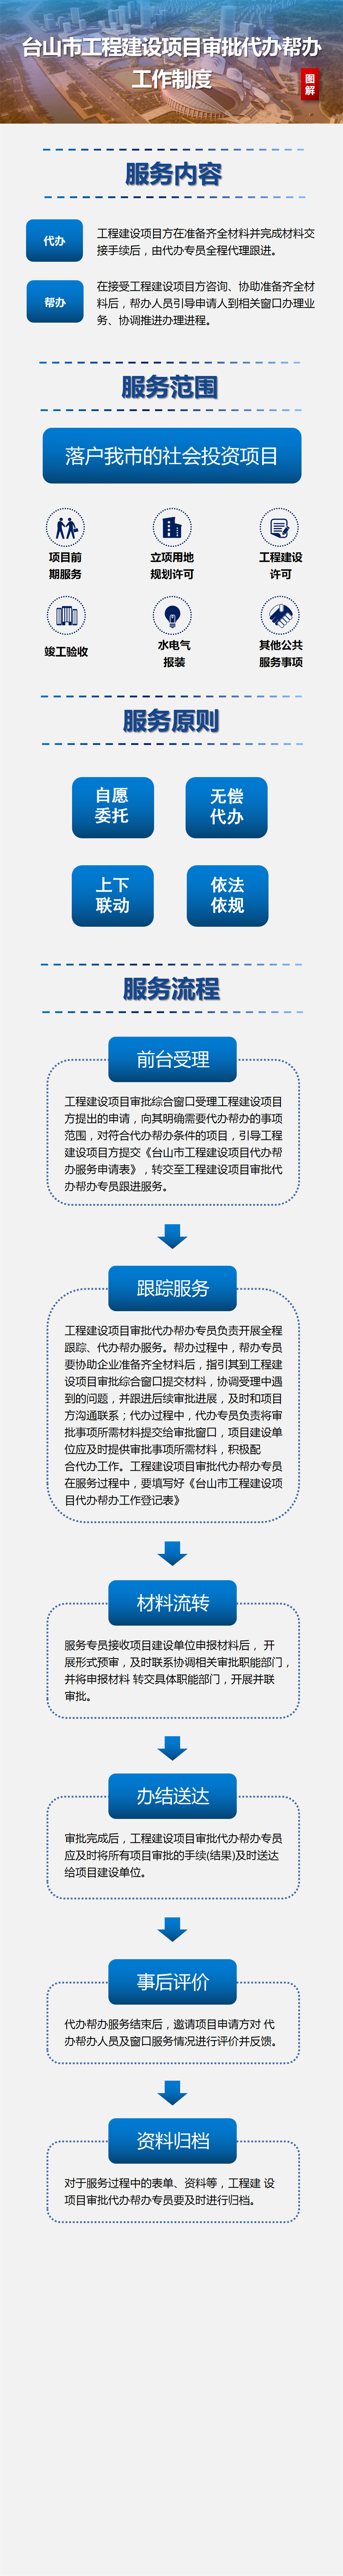 《台山市工程建设项目审批代办帮办工作制度的通知》图解_01(1).png